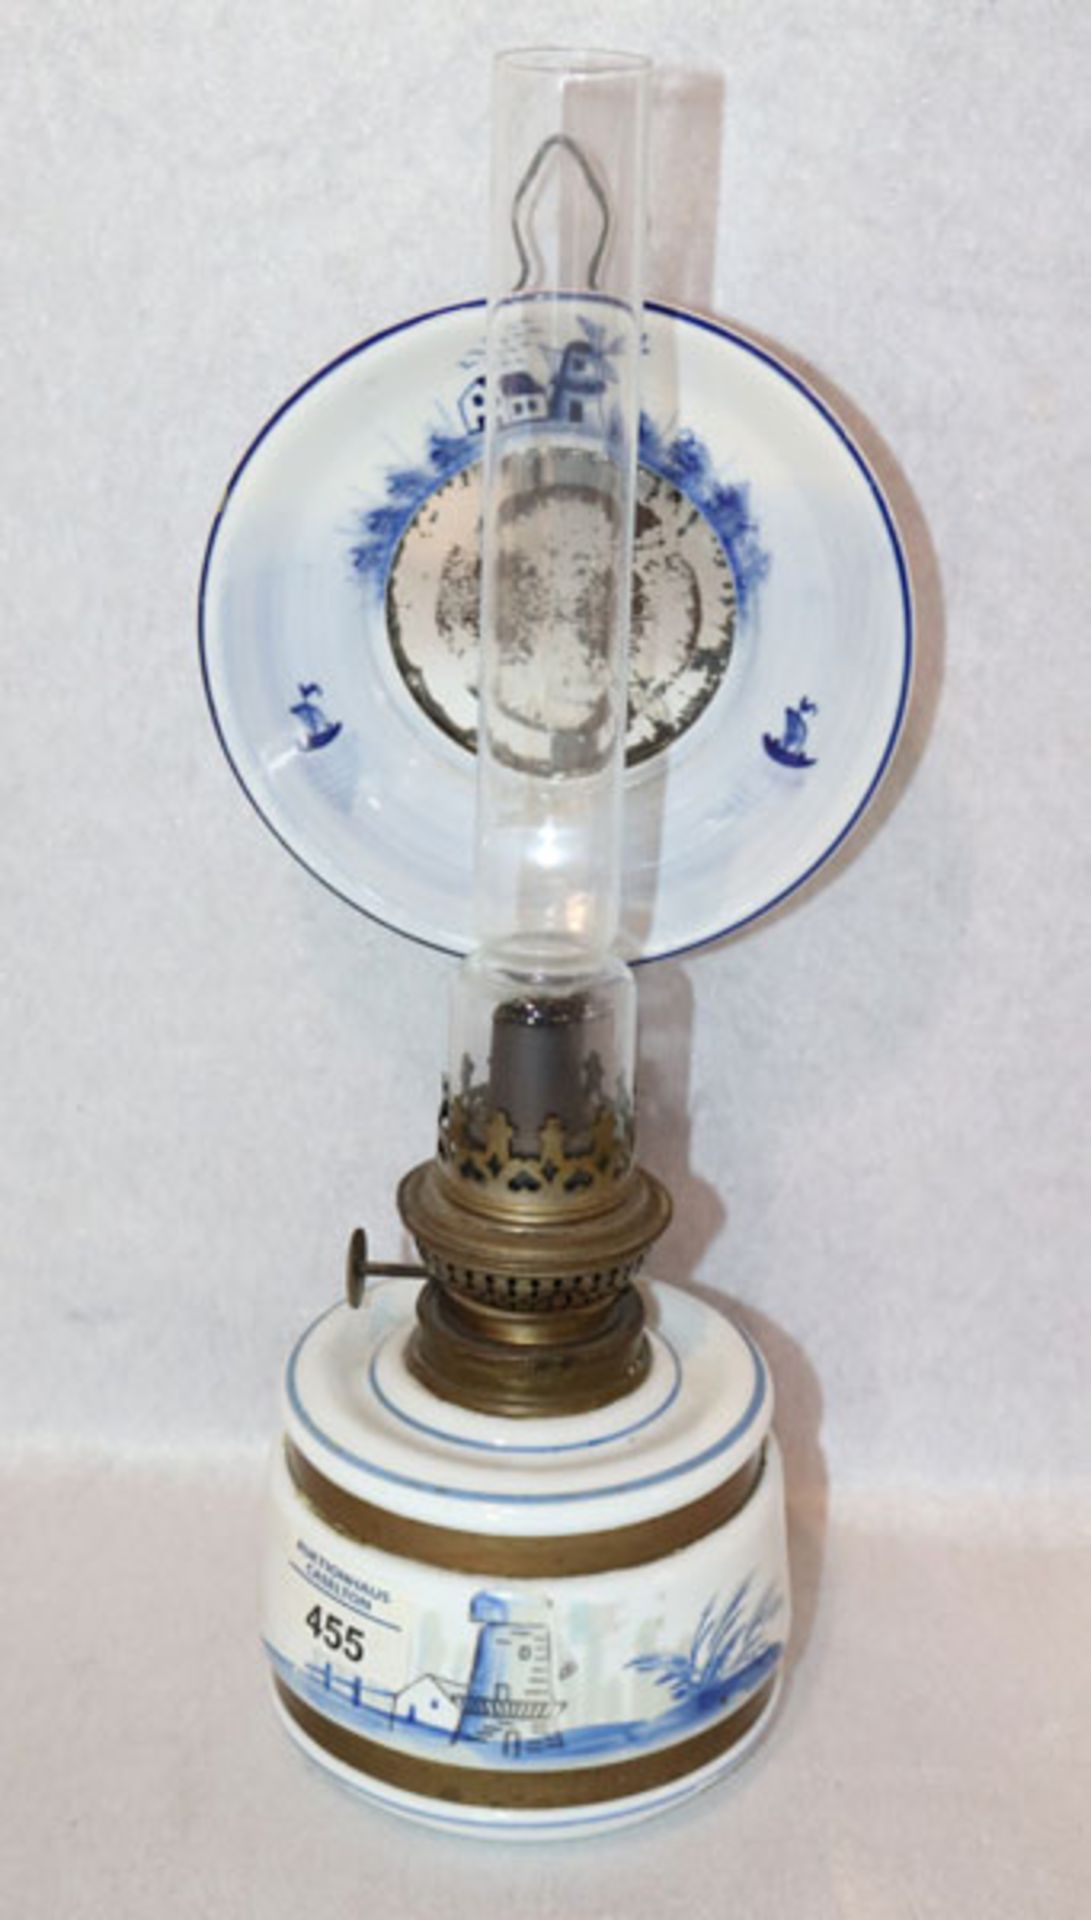 Petroleumlampe mit holländischem Dekor und Glaszylinder, H 38 cm, B 13 cm, T 17 cm, Alters- und